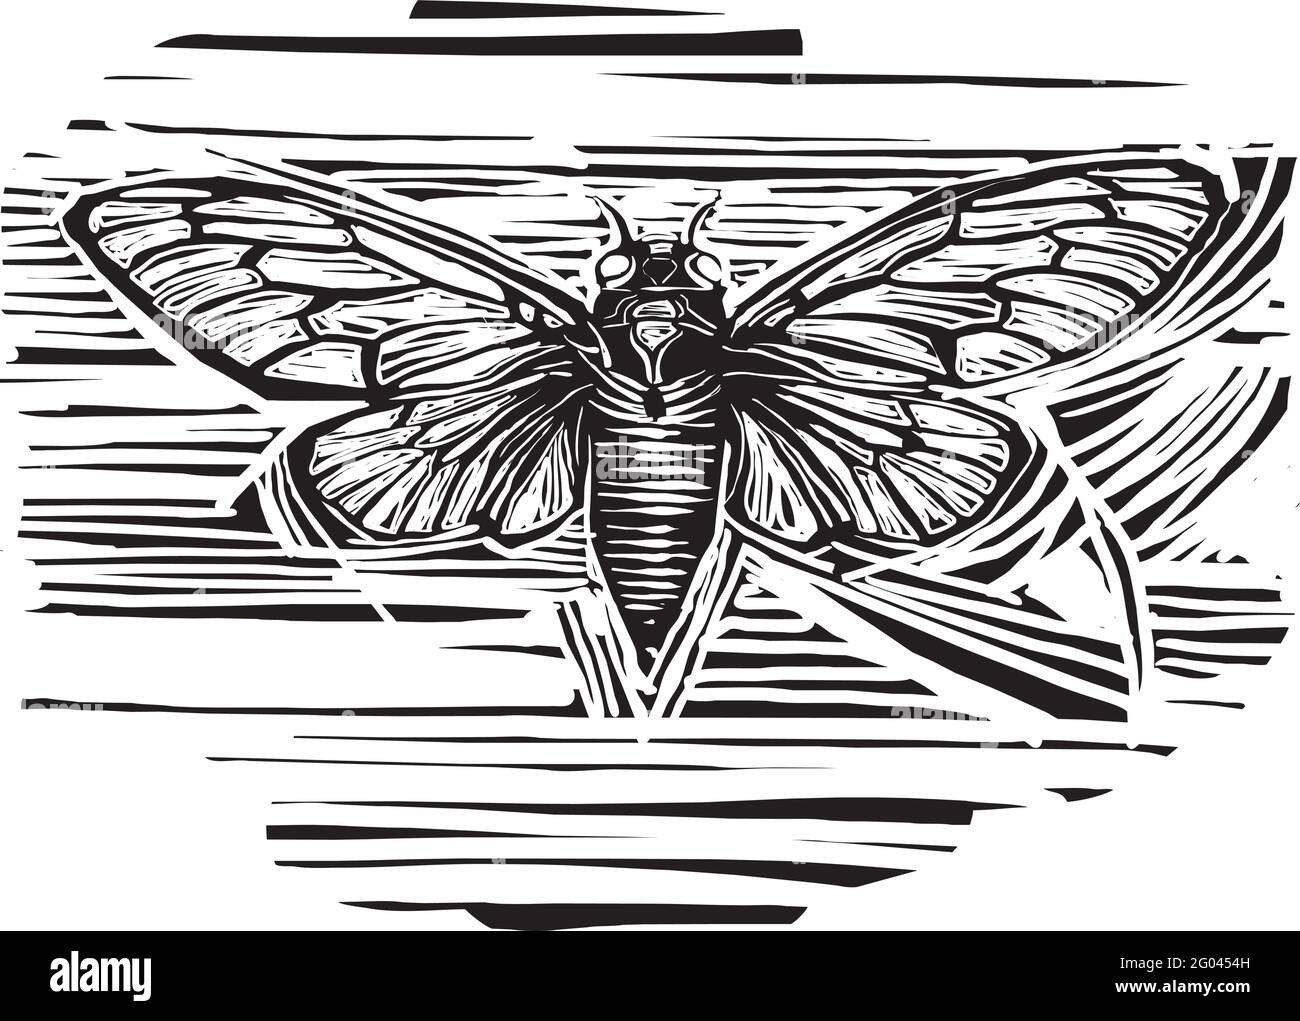 Image de style expressionniste de la brood X Cicada avec ses les ailes se déploient Illustration de Vecteur